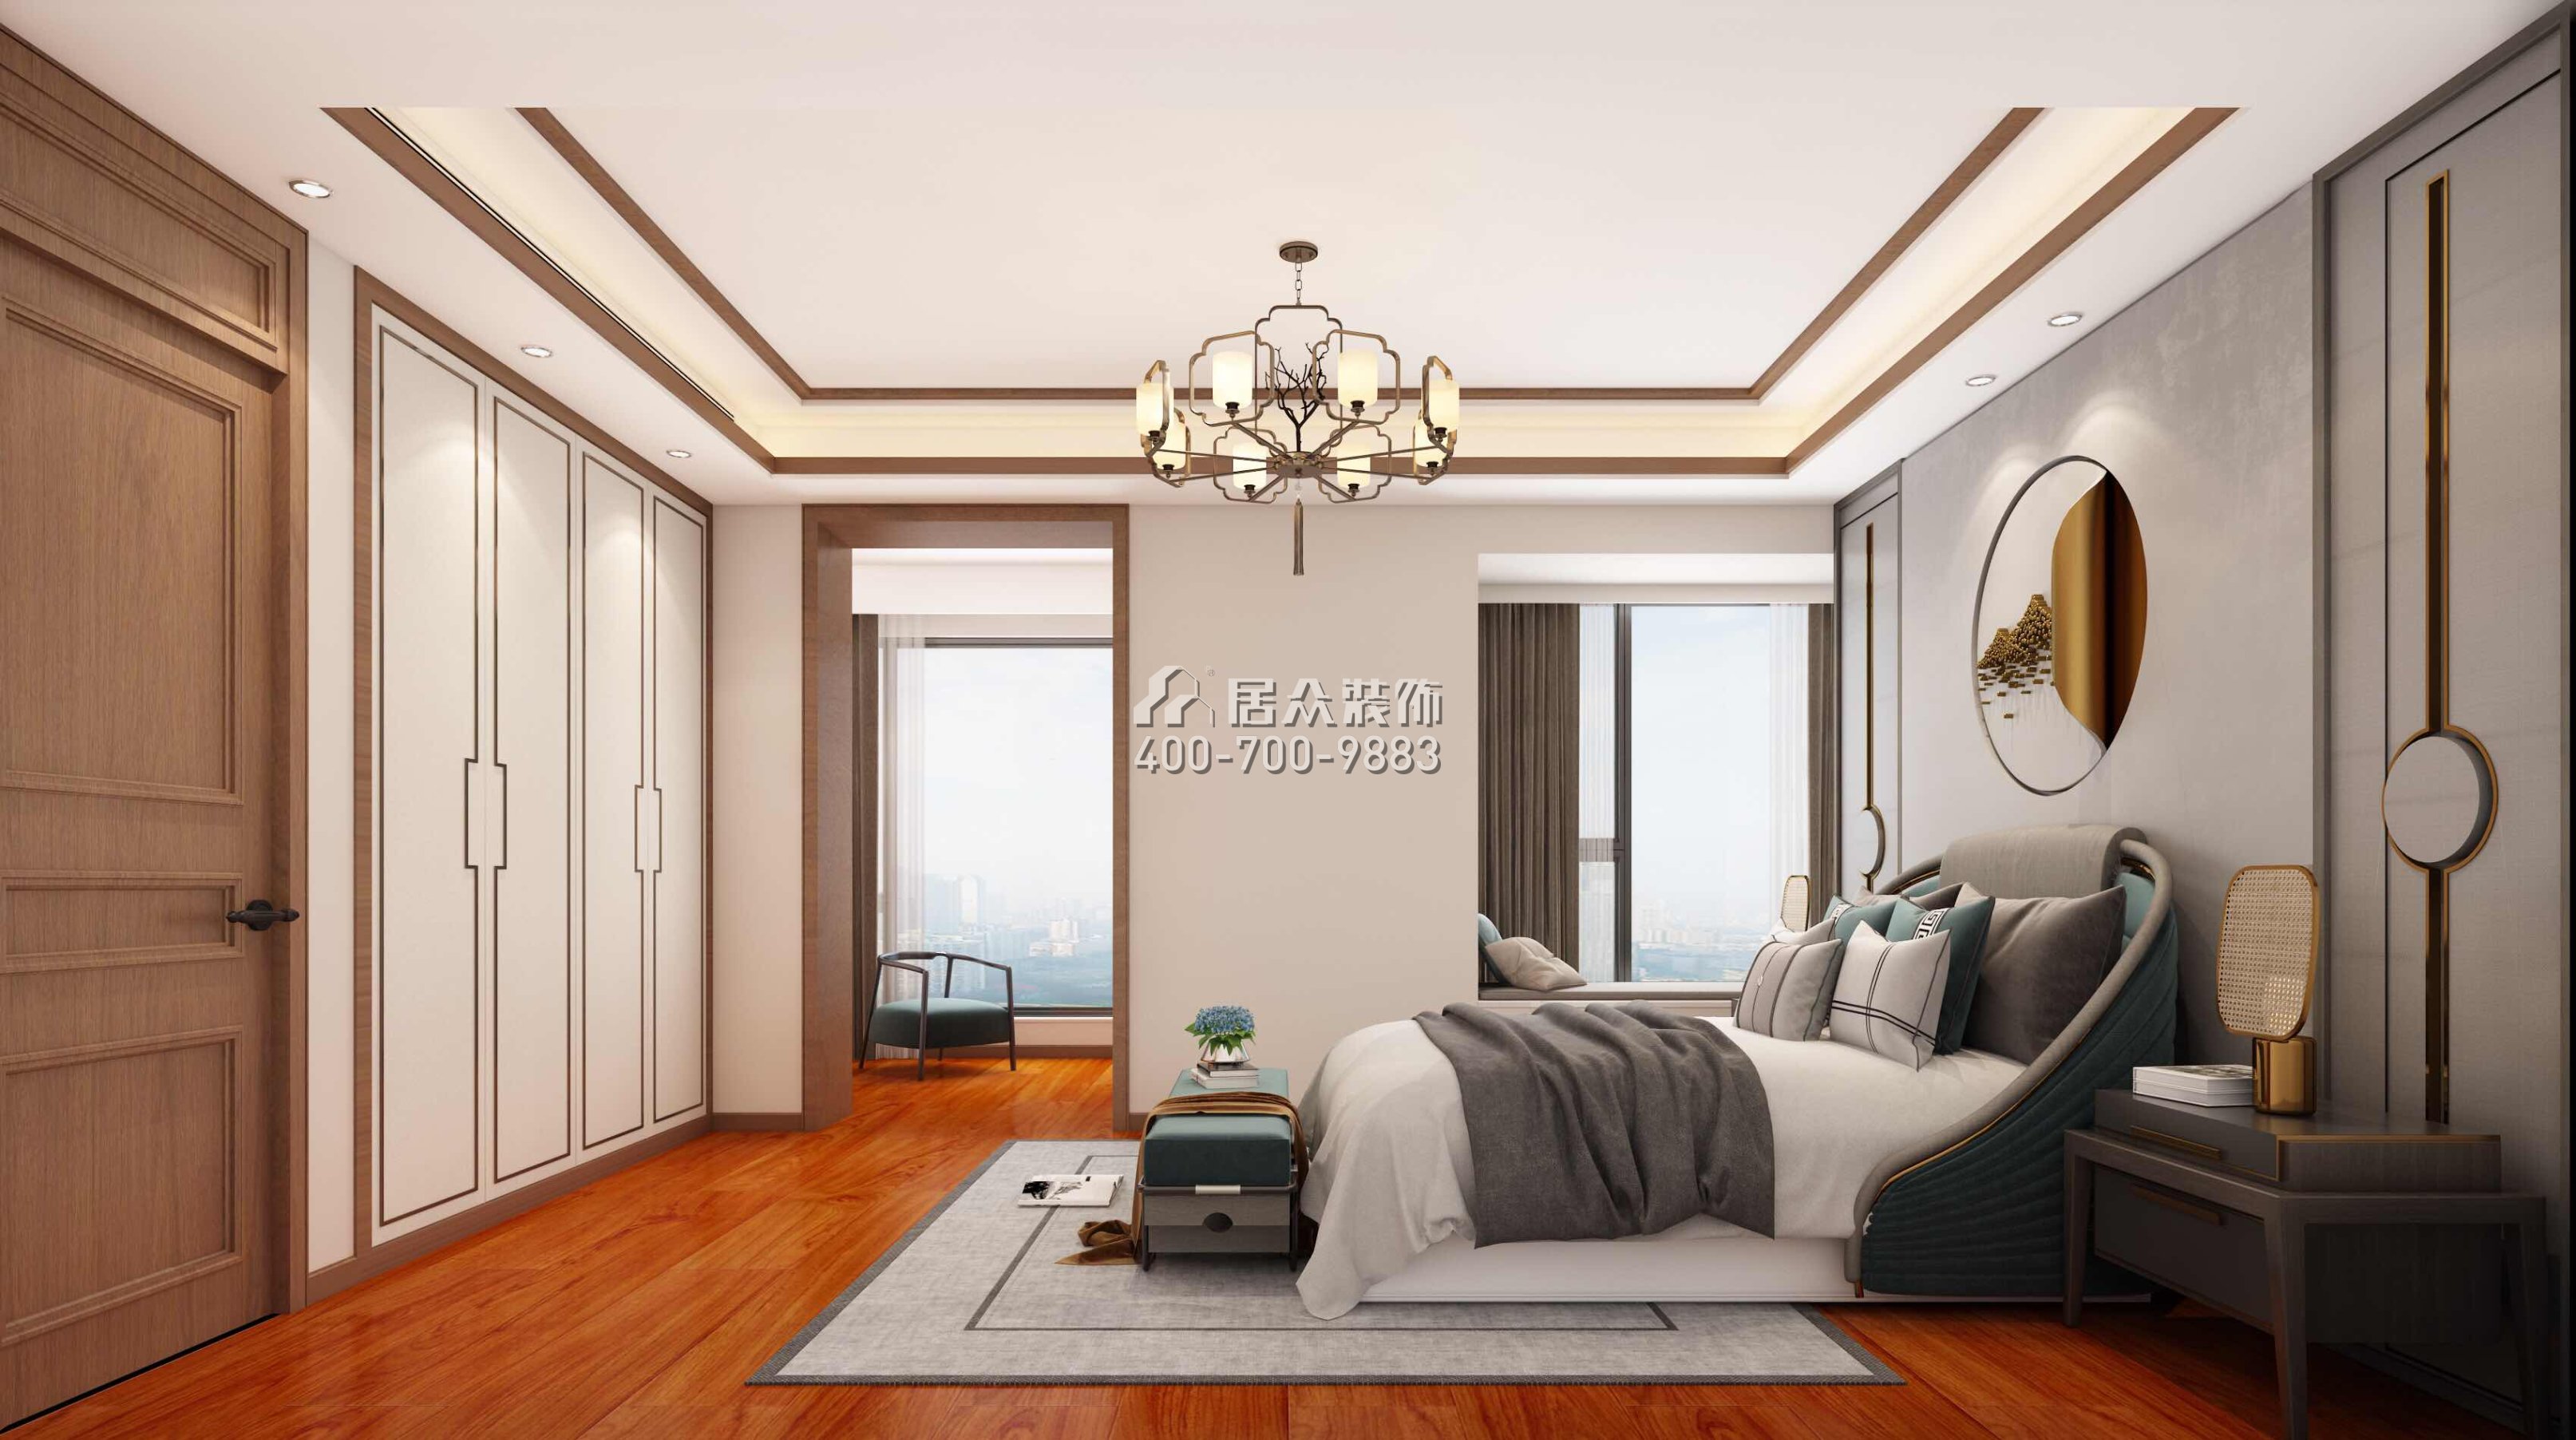 宝生midtown 207平方米中式风格平层户型卧室装修效果图